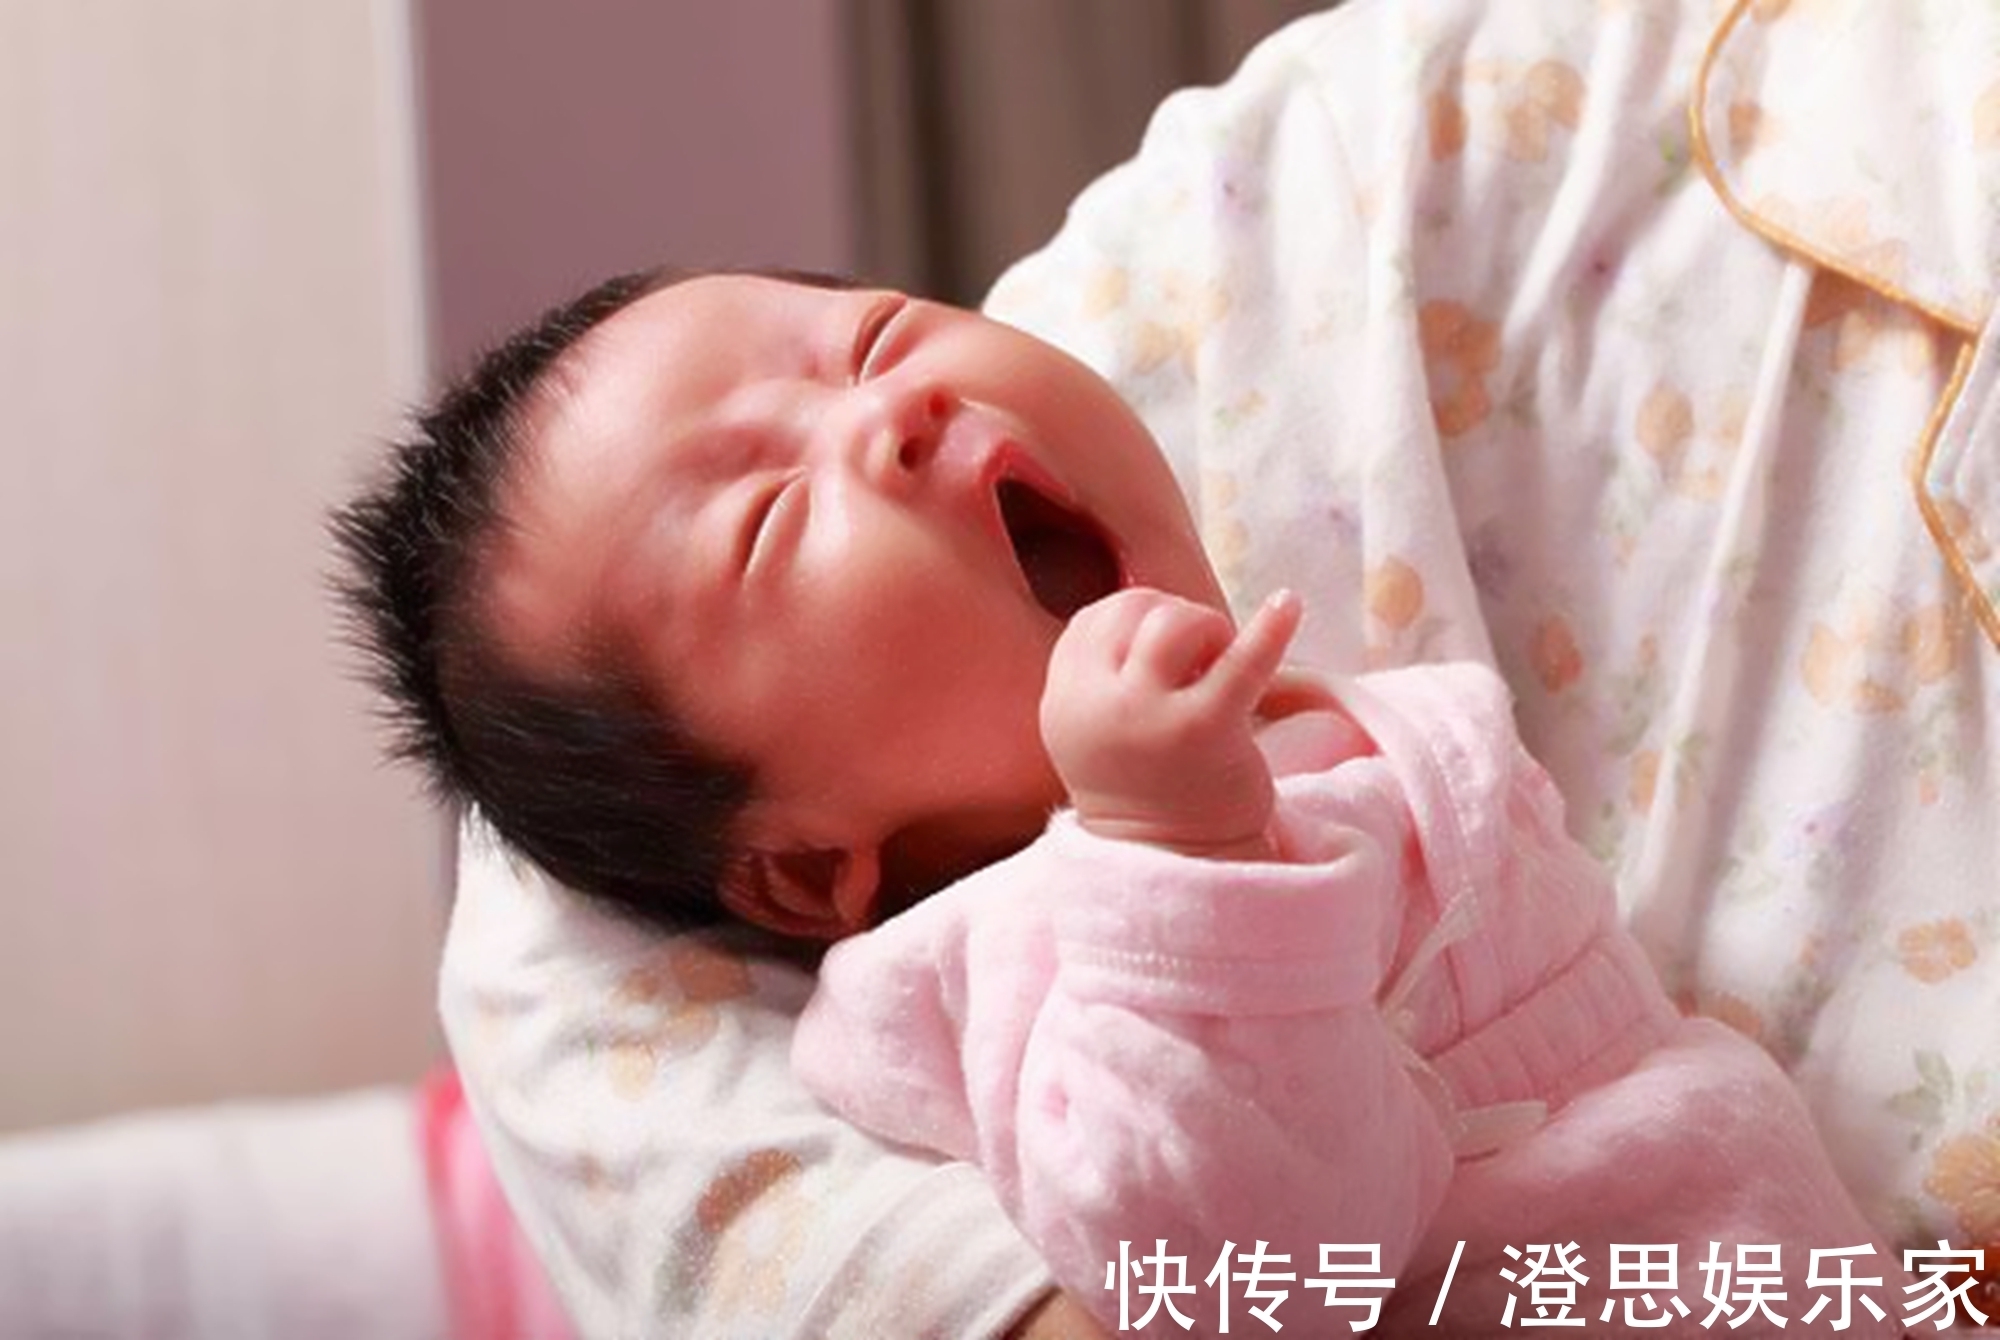 果冻|11个月宝宝吃母乳身亡，医生怒斥“素食妈妈”的无心之举太无知